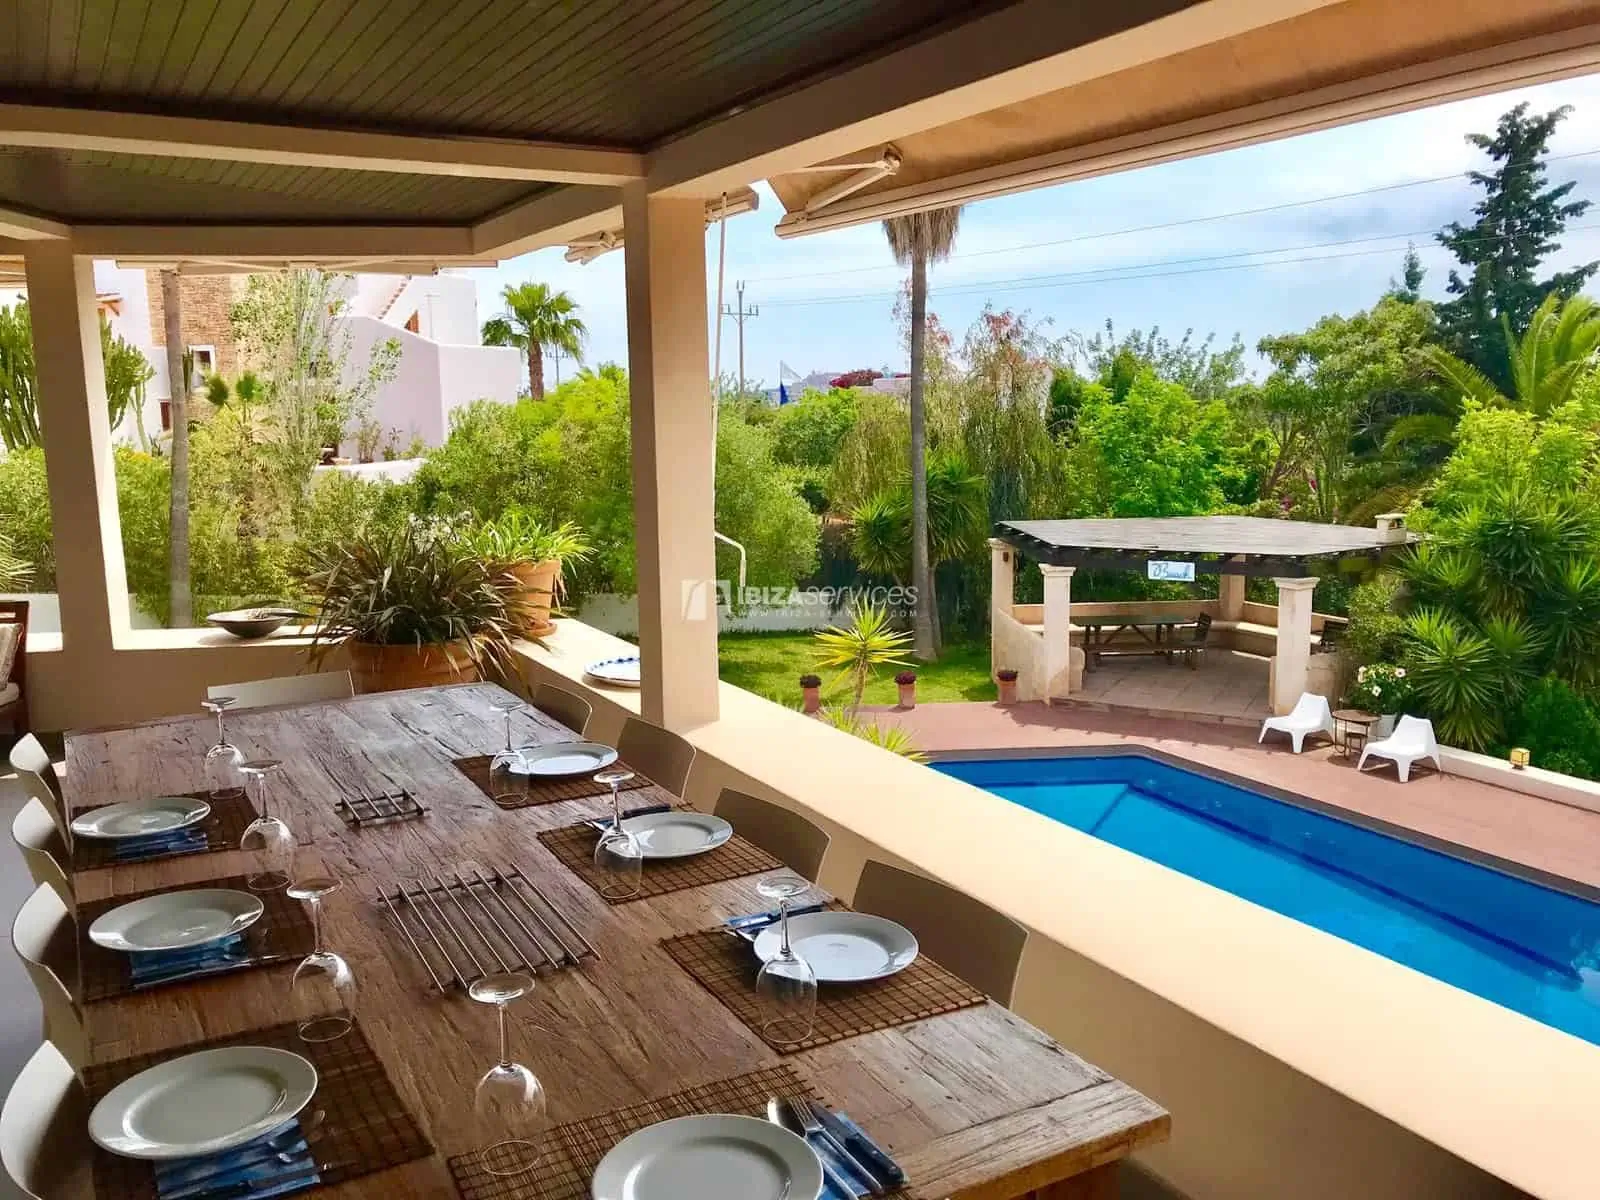 Große und schöne Villa im mediterranen Stil mit riesigem Swimmingpool zu vermieten